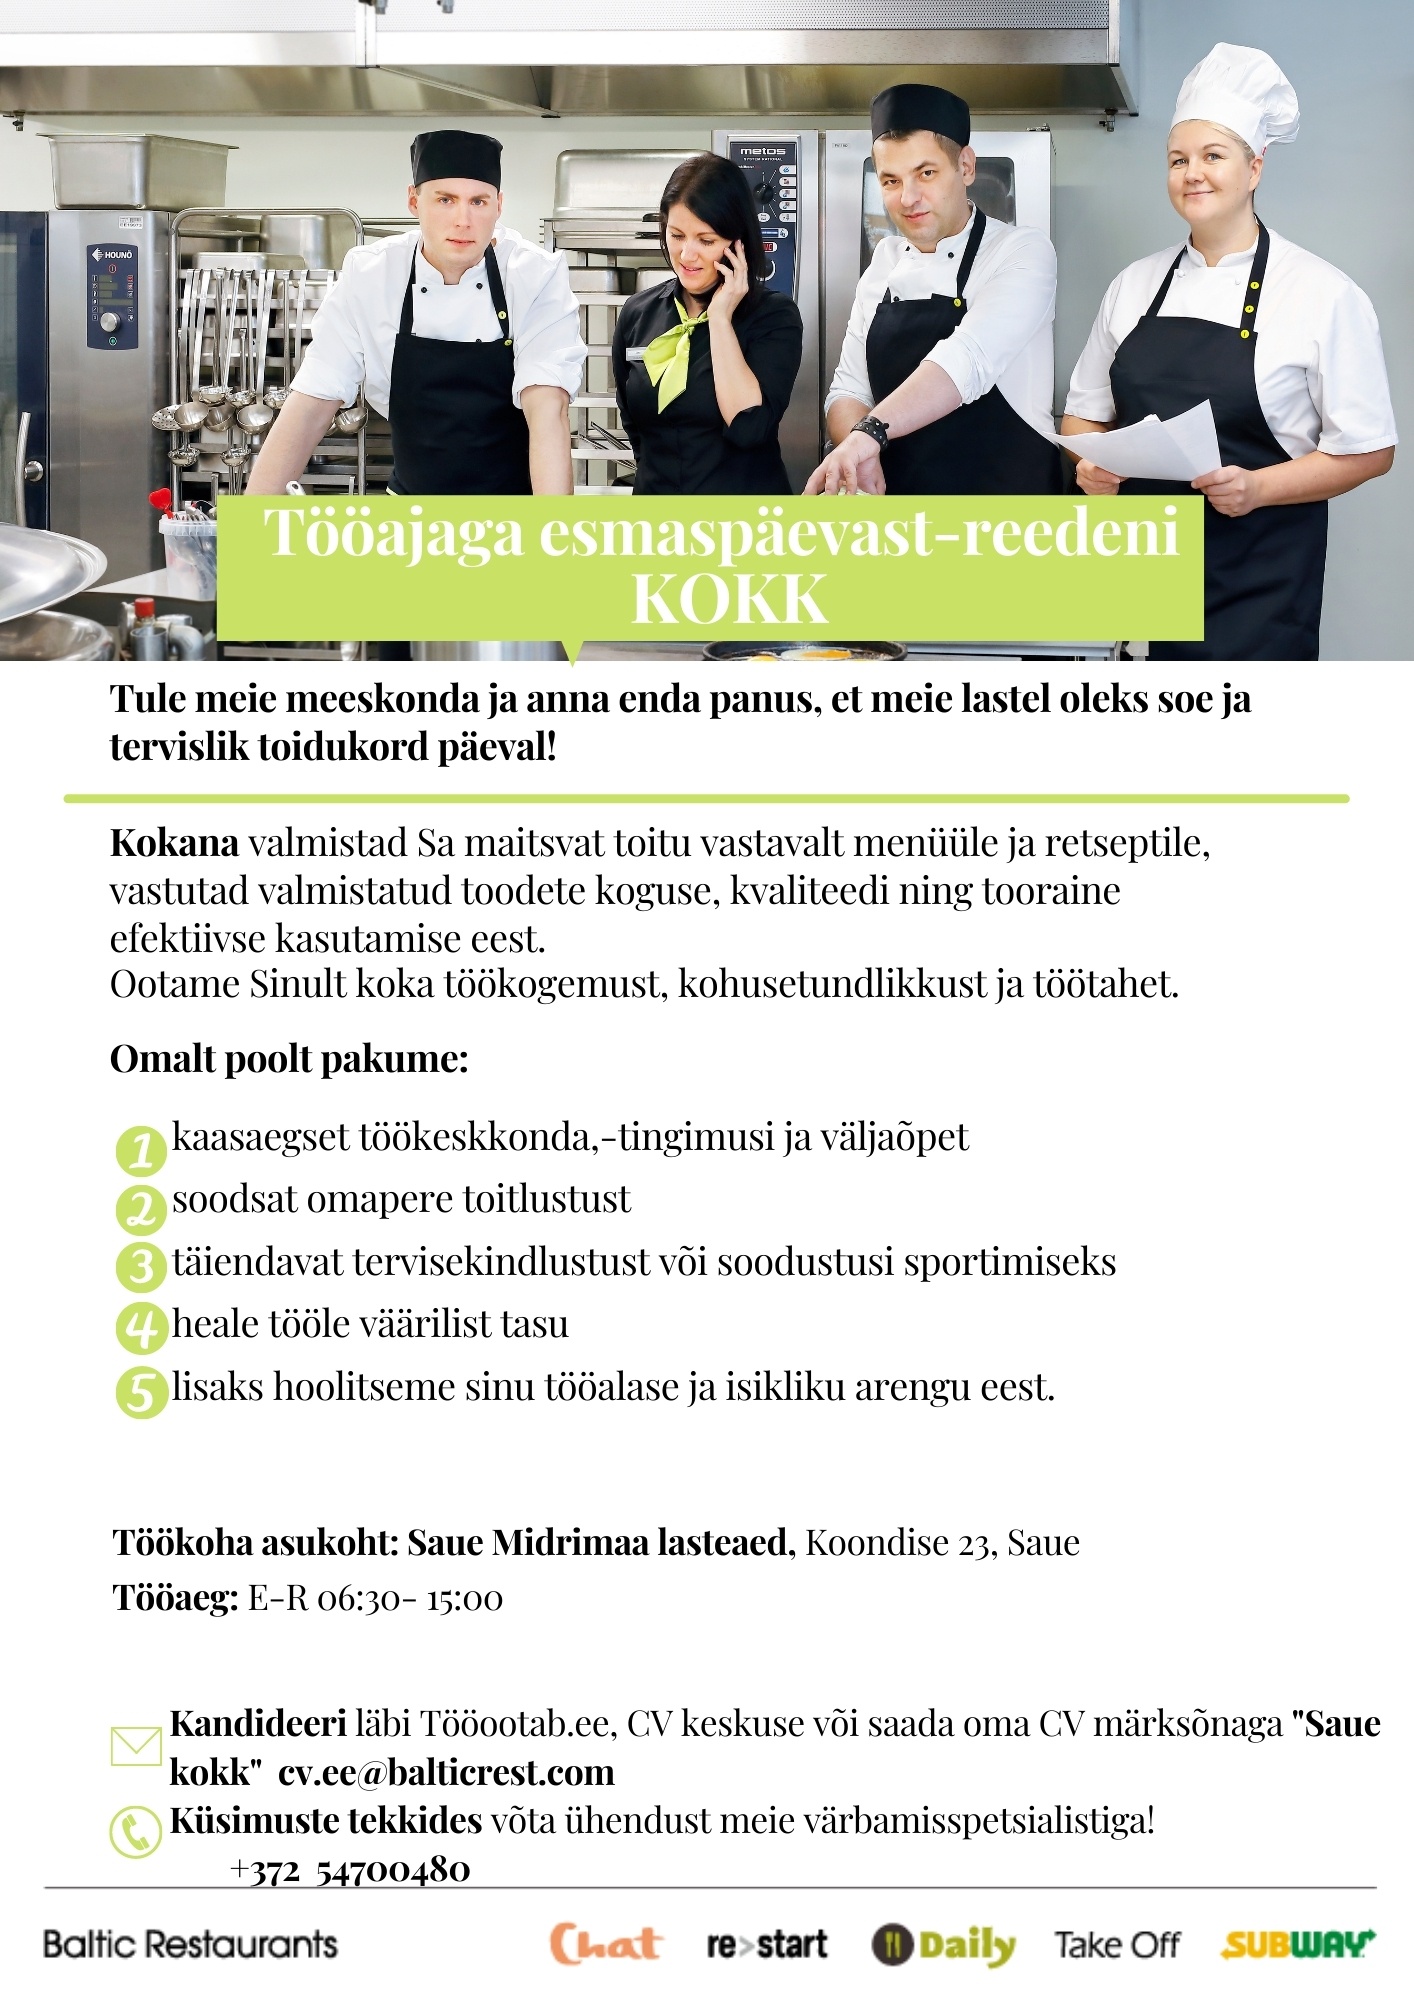 Baltic Restaurants Estonia AS KOKK Saue Midrimaa lasteaia Daily kööki!